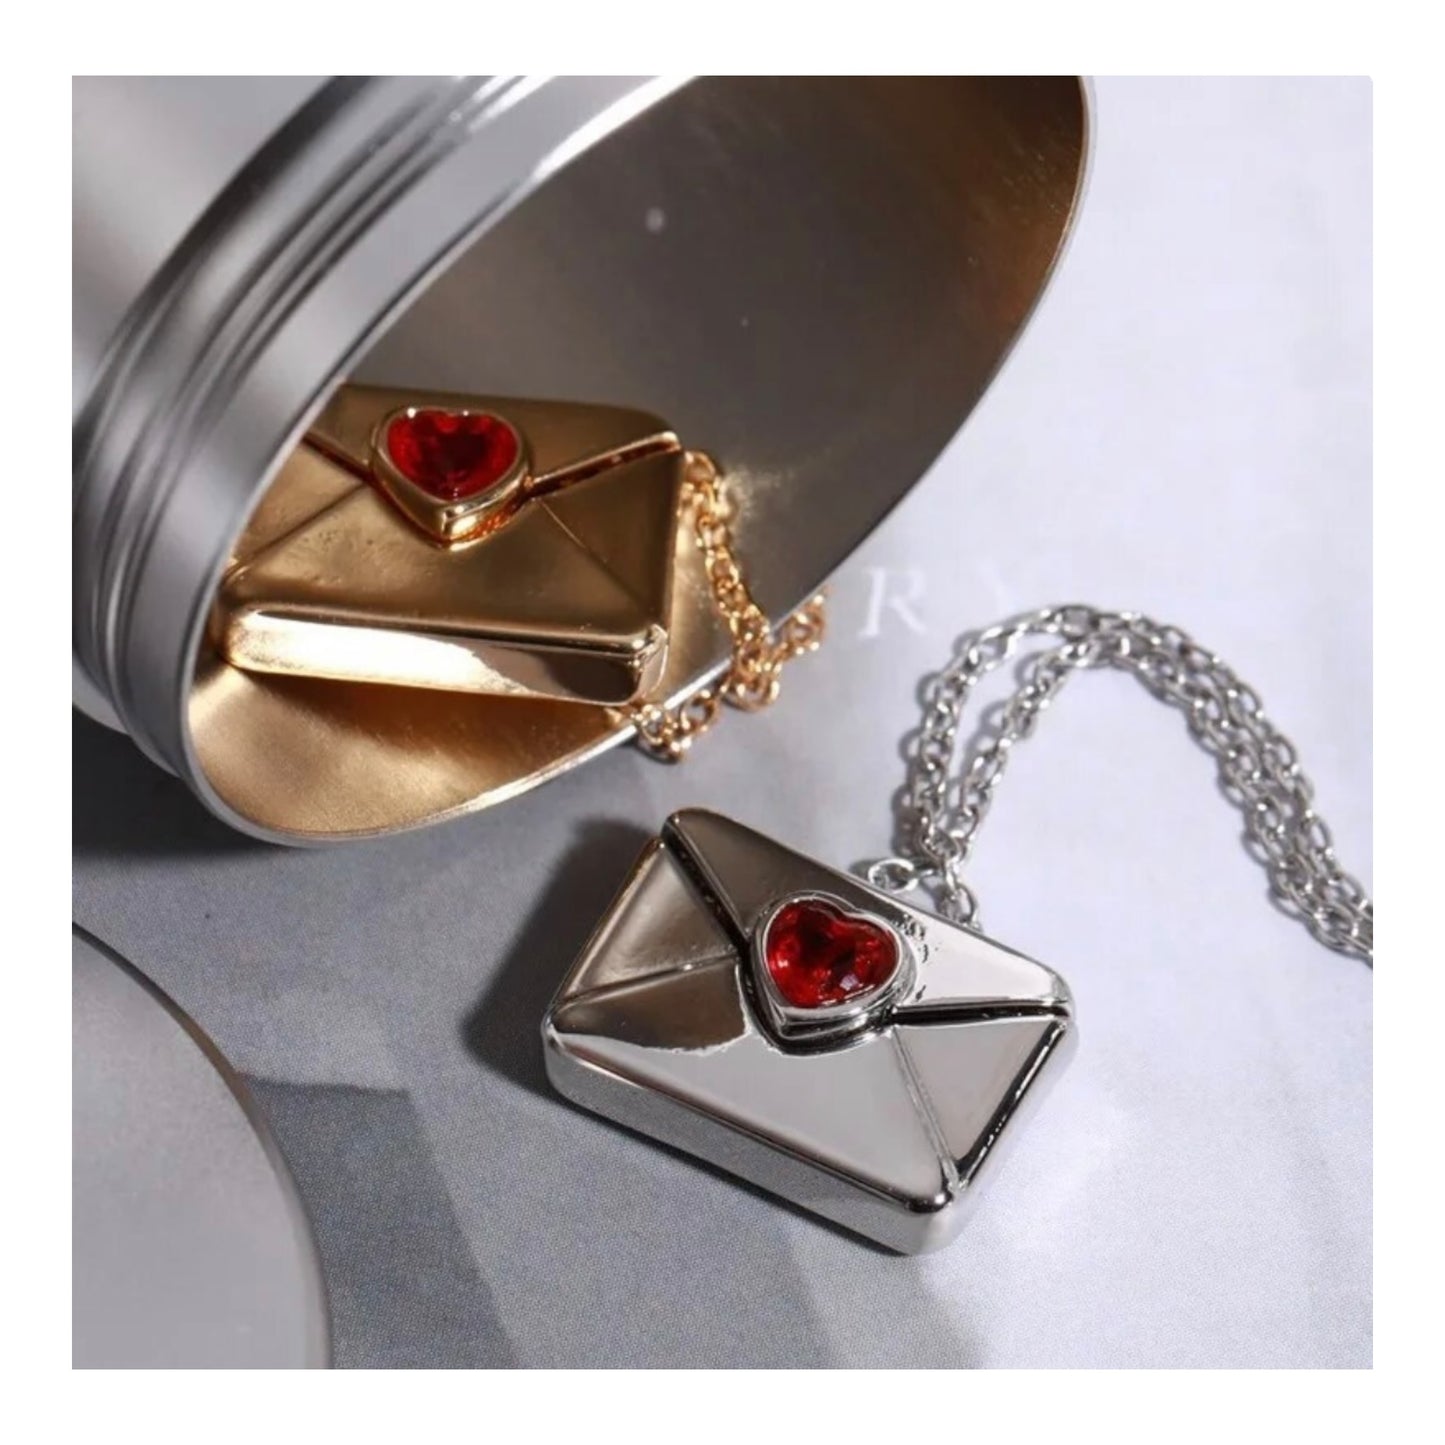 “I love you” envelope locket necklace